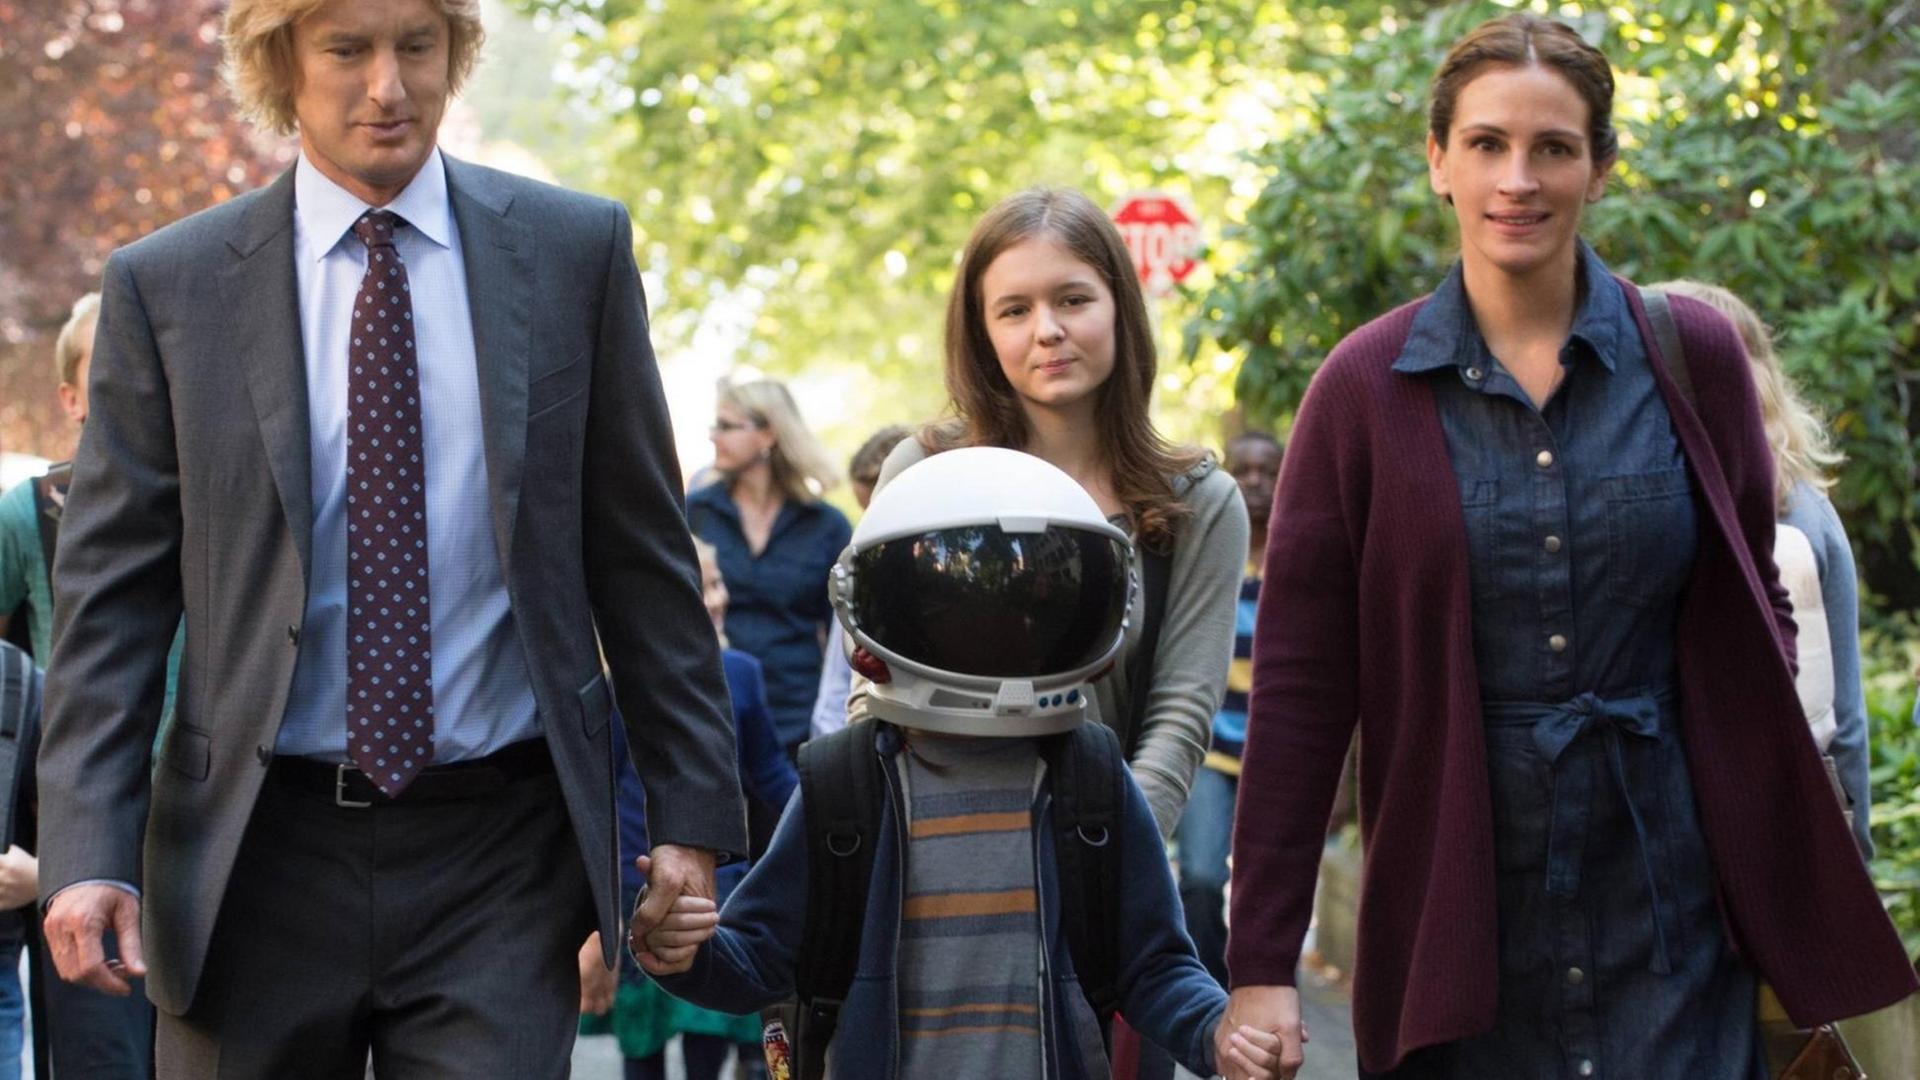 Am ersten Schultag begleiten Auggie im Film "Wunder" sein Papa Nate, seine Mama Isabel, seine Schwester Olivia - und sein Helm